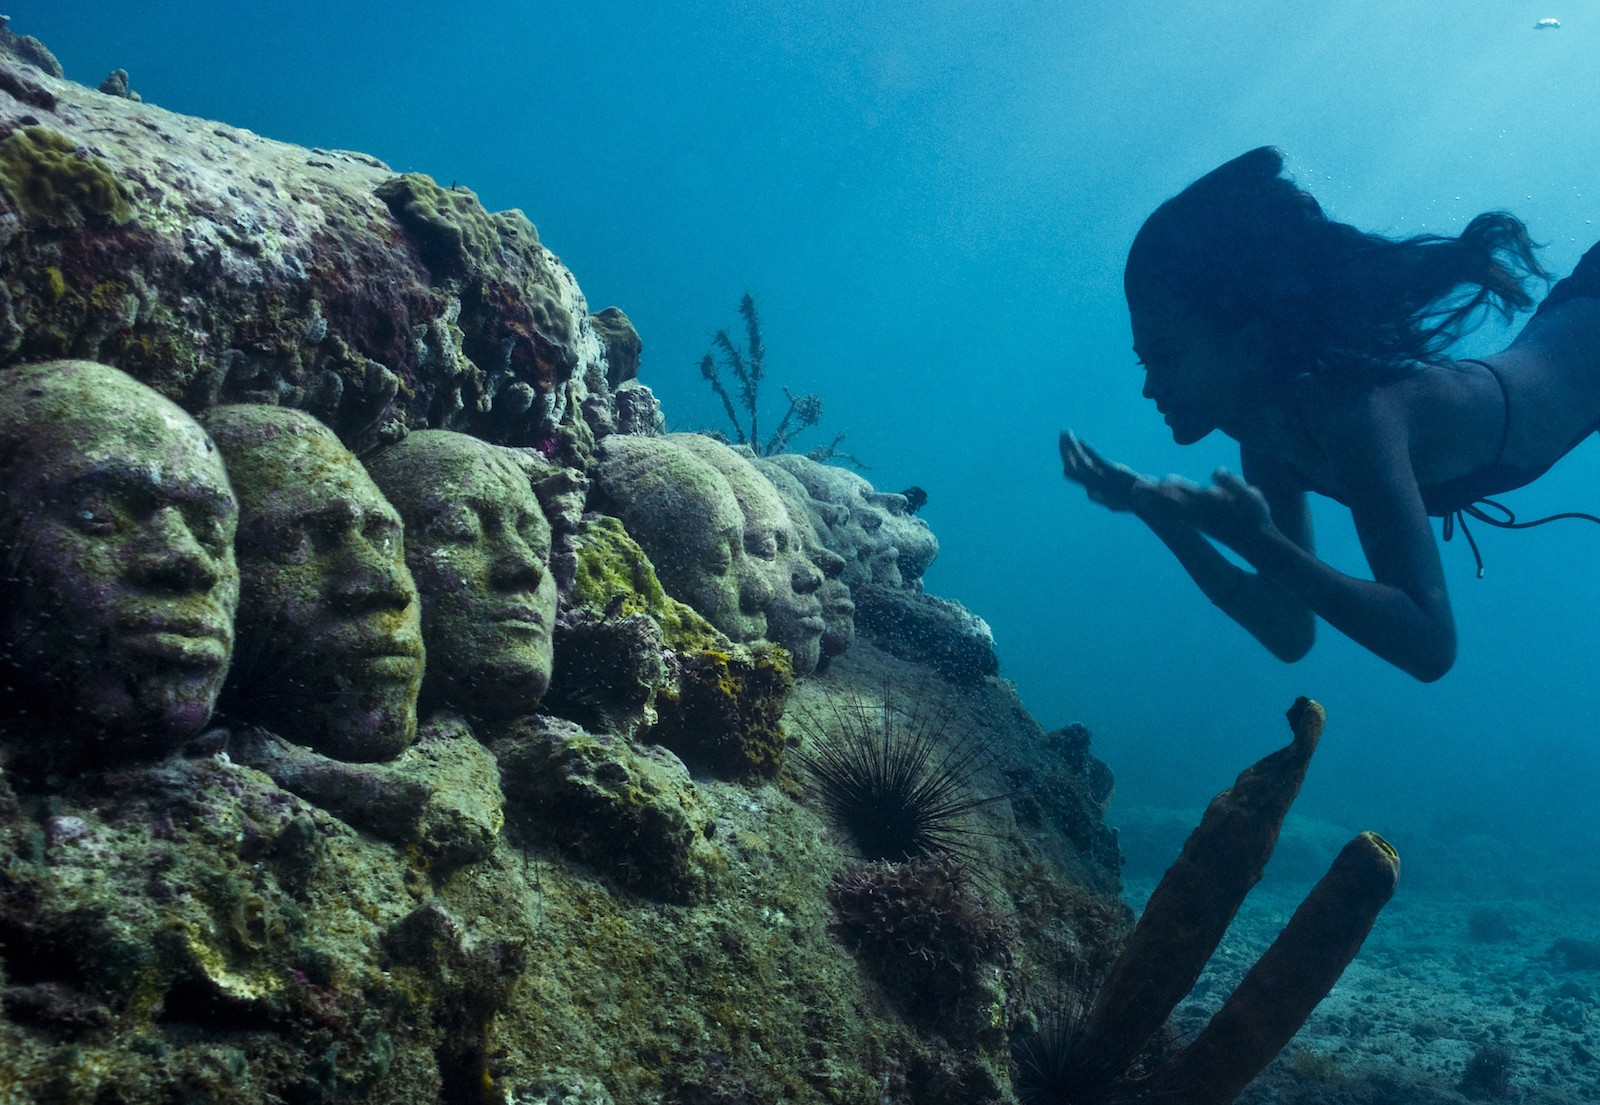 Часть подводной скульптурной композиции Джейсона Тейлора у берегов Гренады, Карибское море. Моря и океаны, интересное, подводный мир